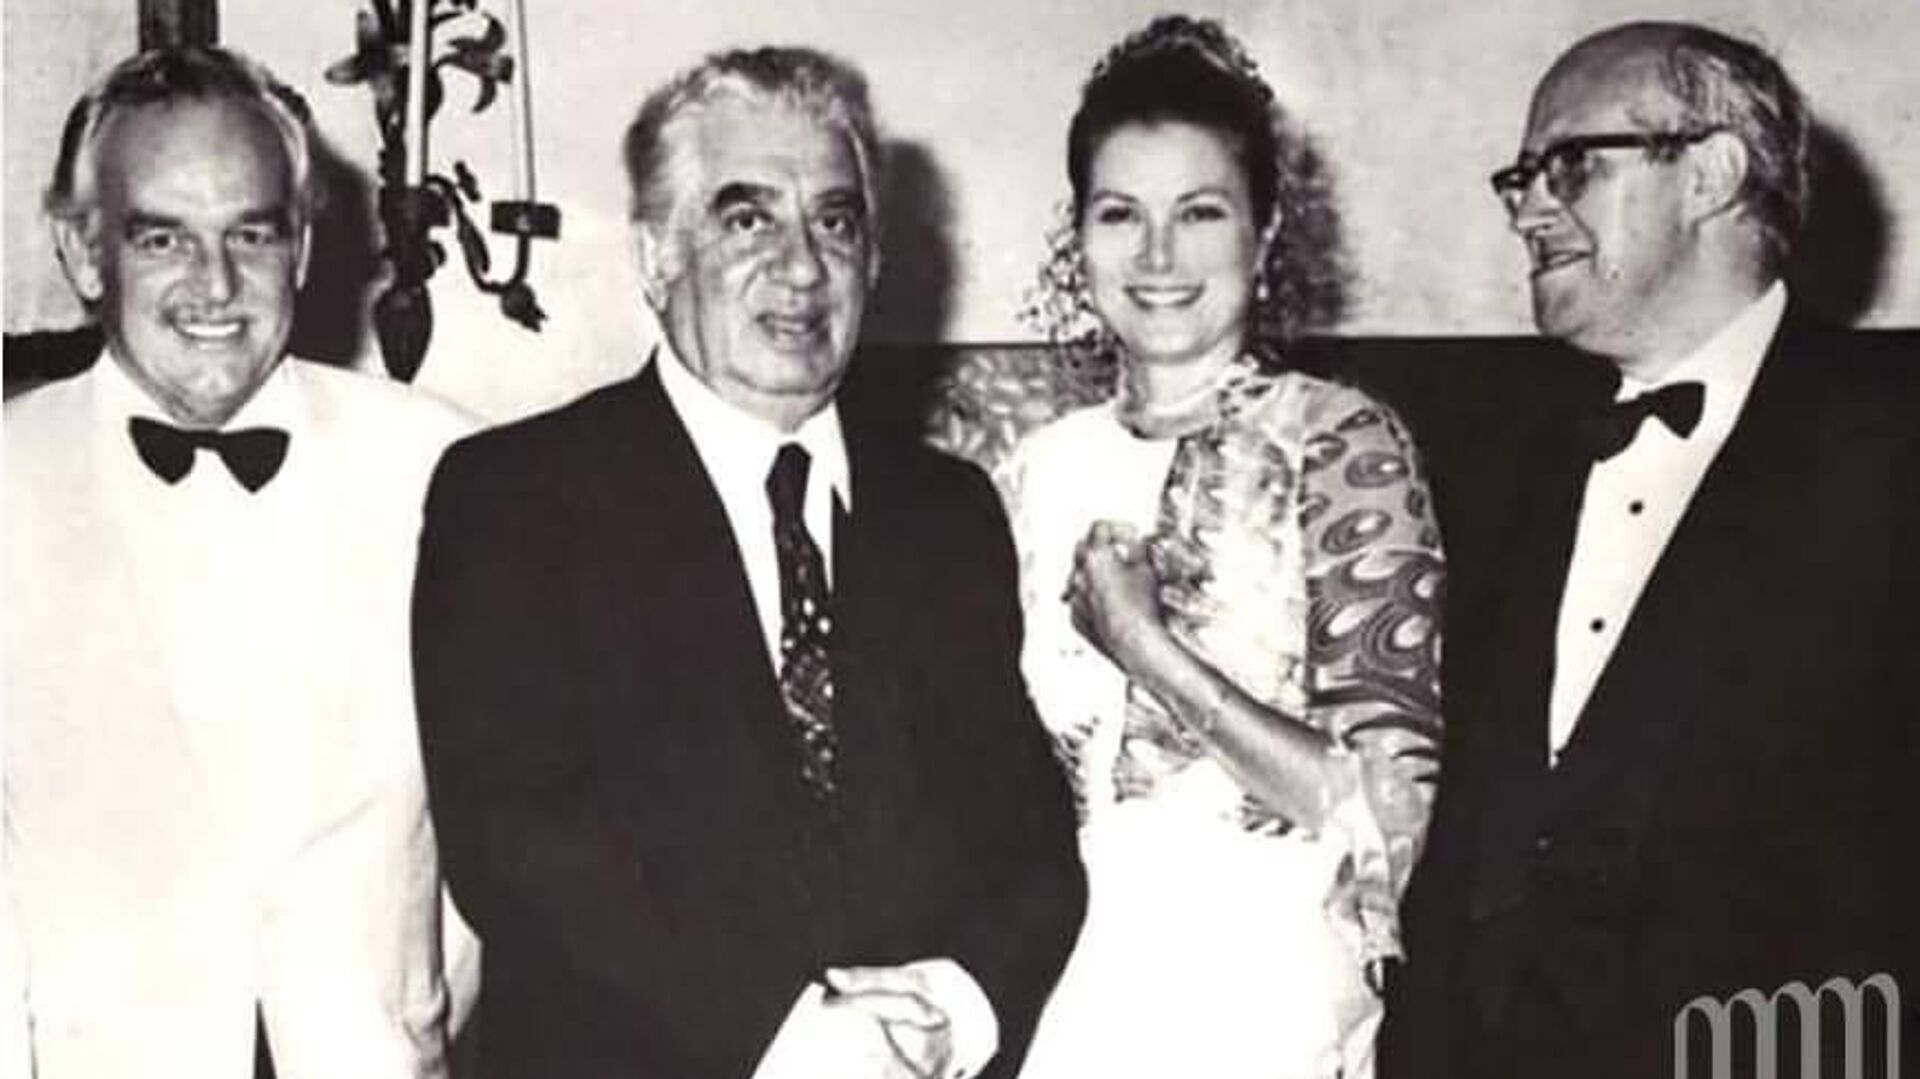 Արամ Խաչատրյանի և Ռոստրոպովիչի 1973 թ.-ին Մոնակո այցելության ժամանակ արքայազն Ռենե lll-ի և արքայադուստր Գրեյս Քելլիի հետ արված լուսանկարը - Sputnik Արմենիա, 1920, 20.07.2022